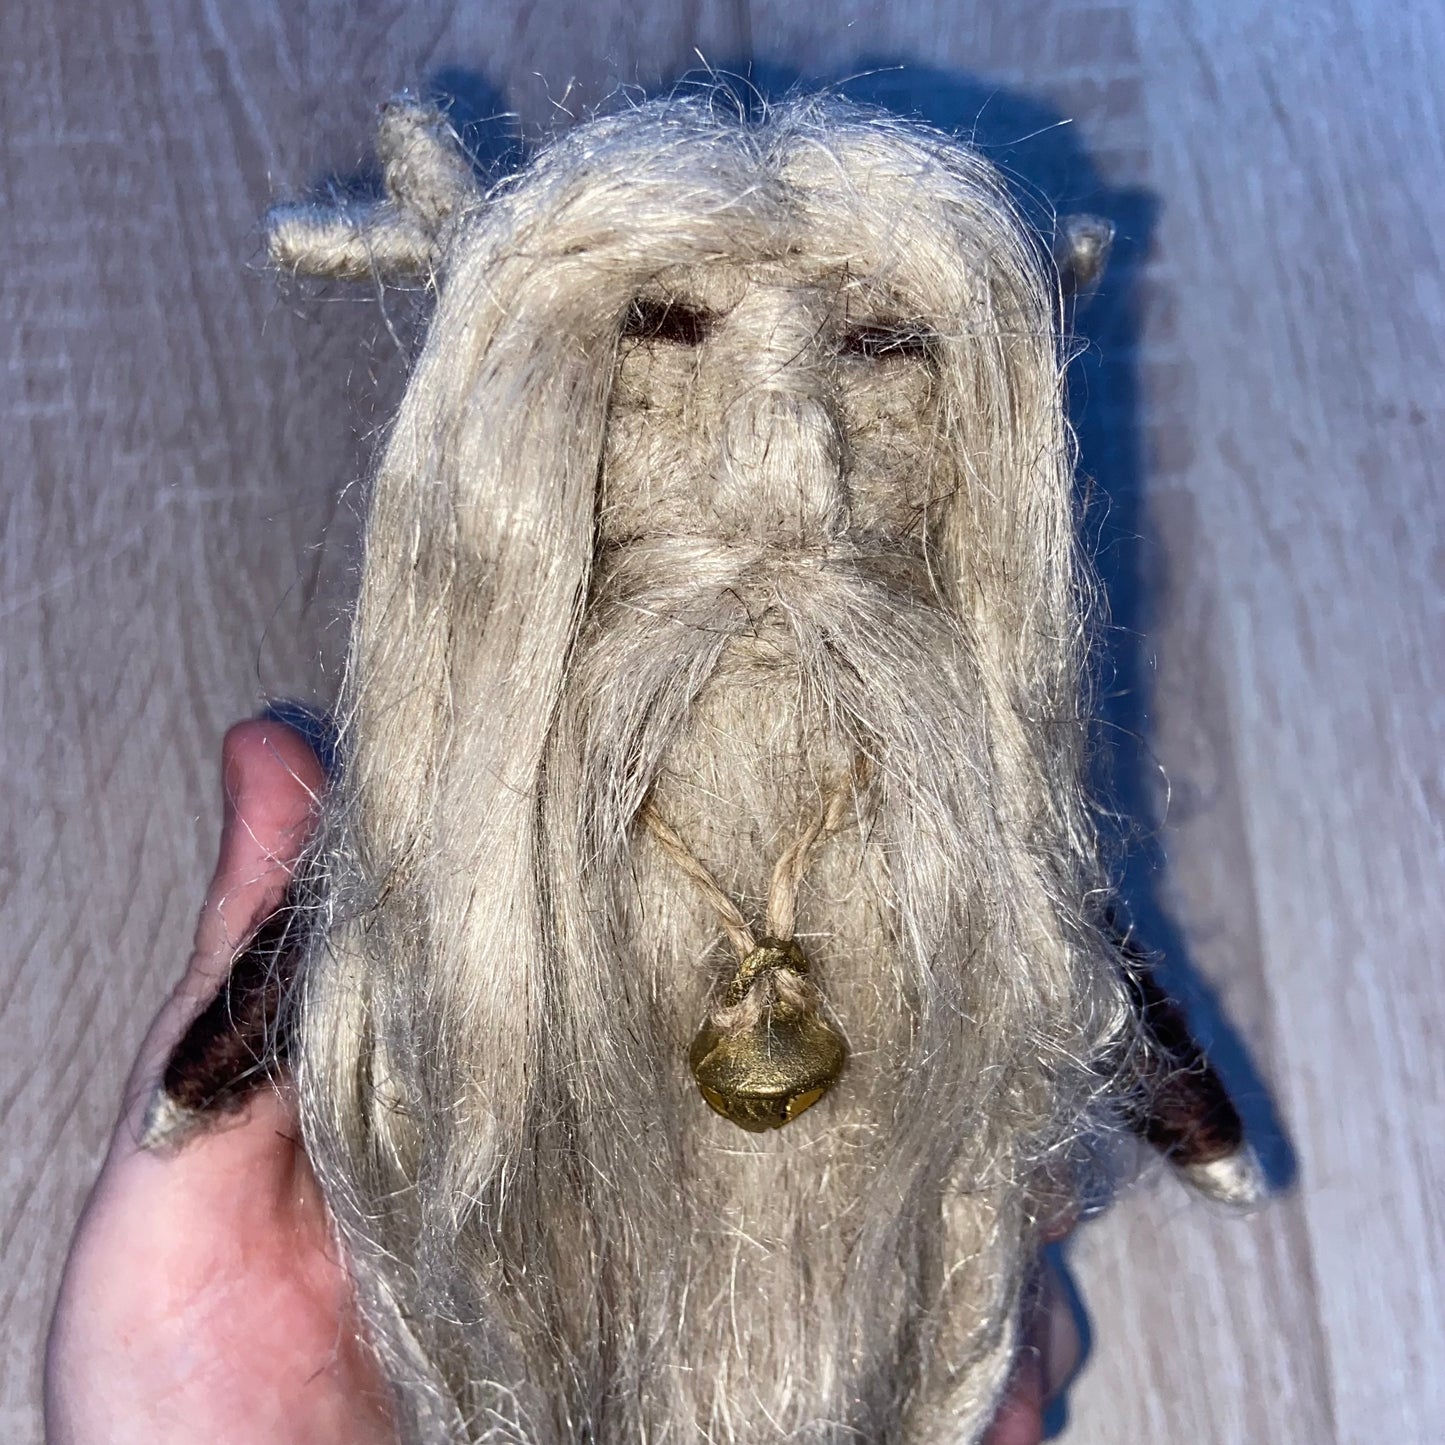 Wizard spirit doll